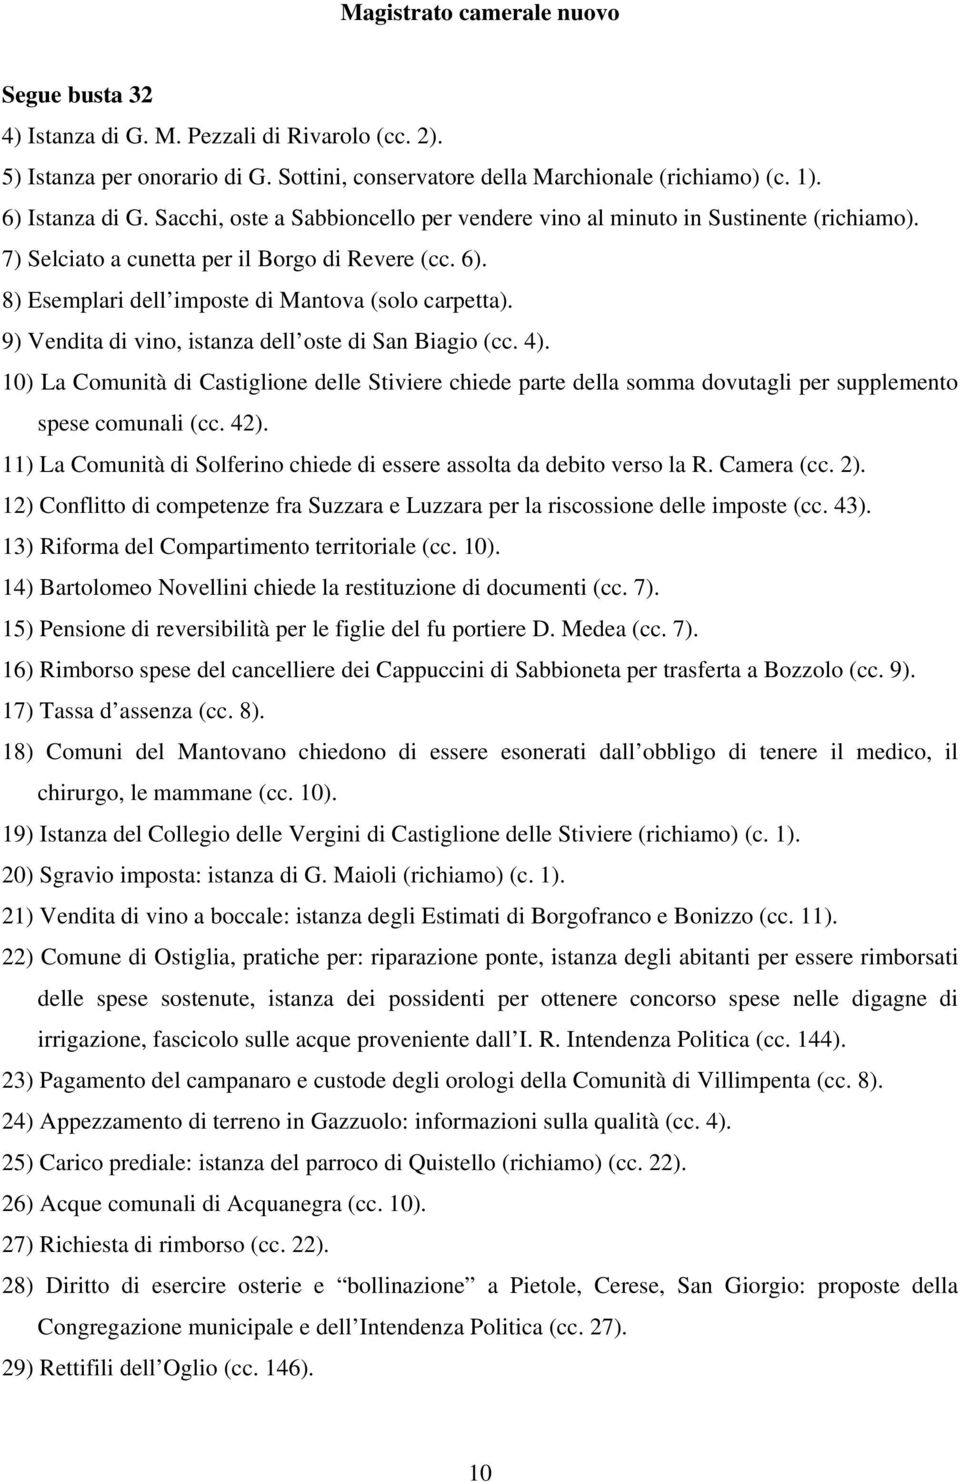 9) Vendita di vino, istanza dell oste di San Biagio (cc. 4). 10) La Comunità di Castiglione delle Stiviere chiede parte della somma dovutagli per supplemento spese comunali (cc. 42).